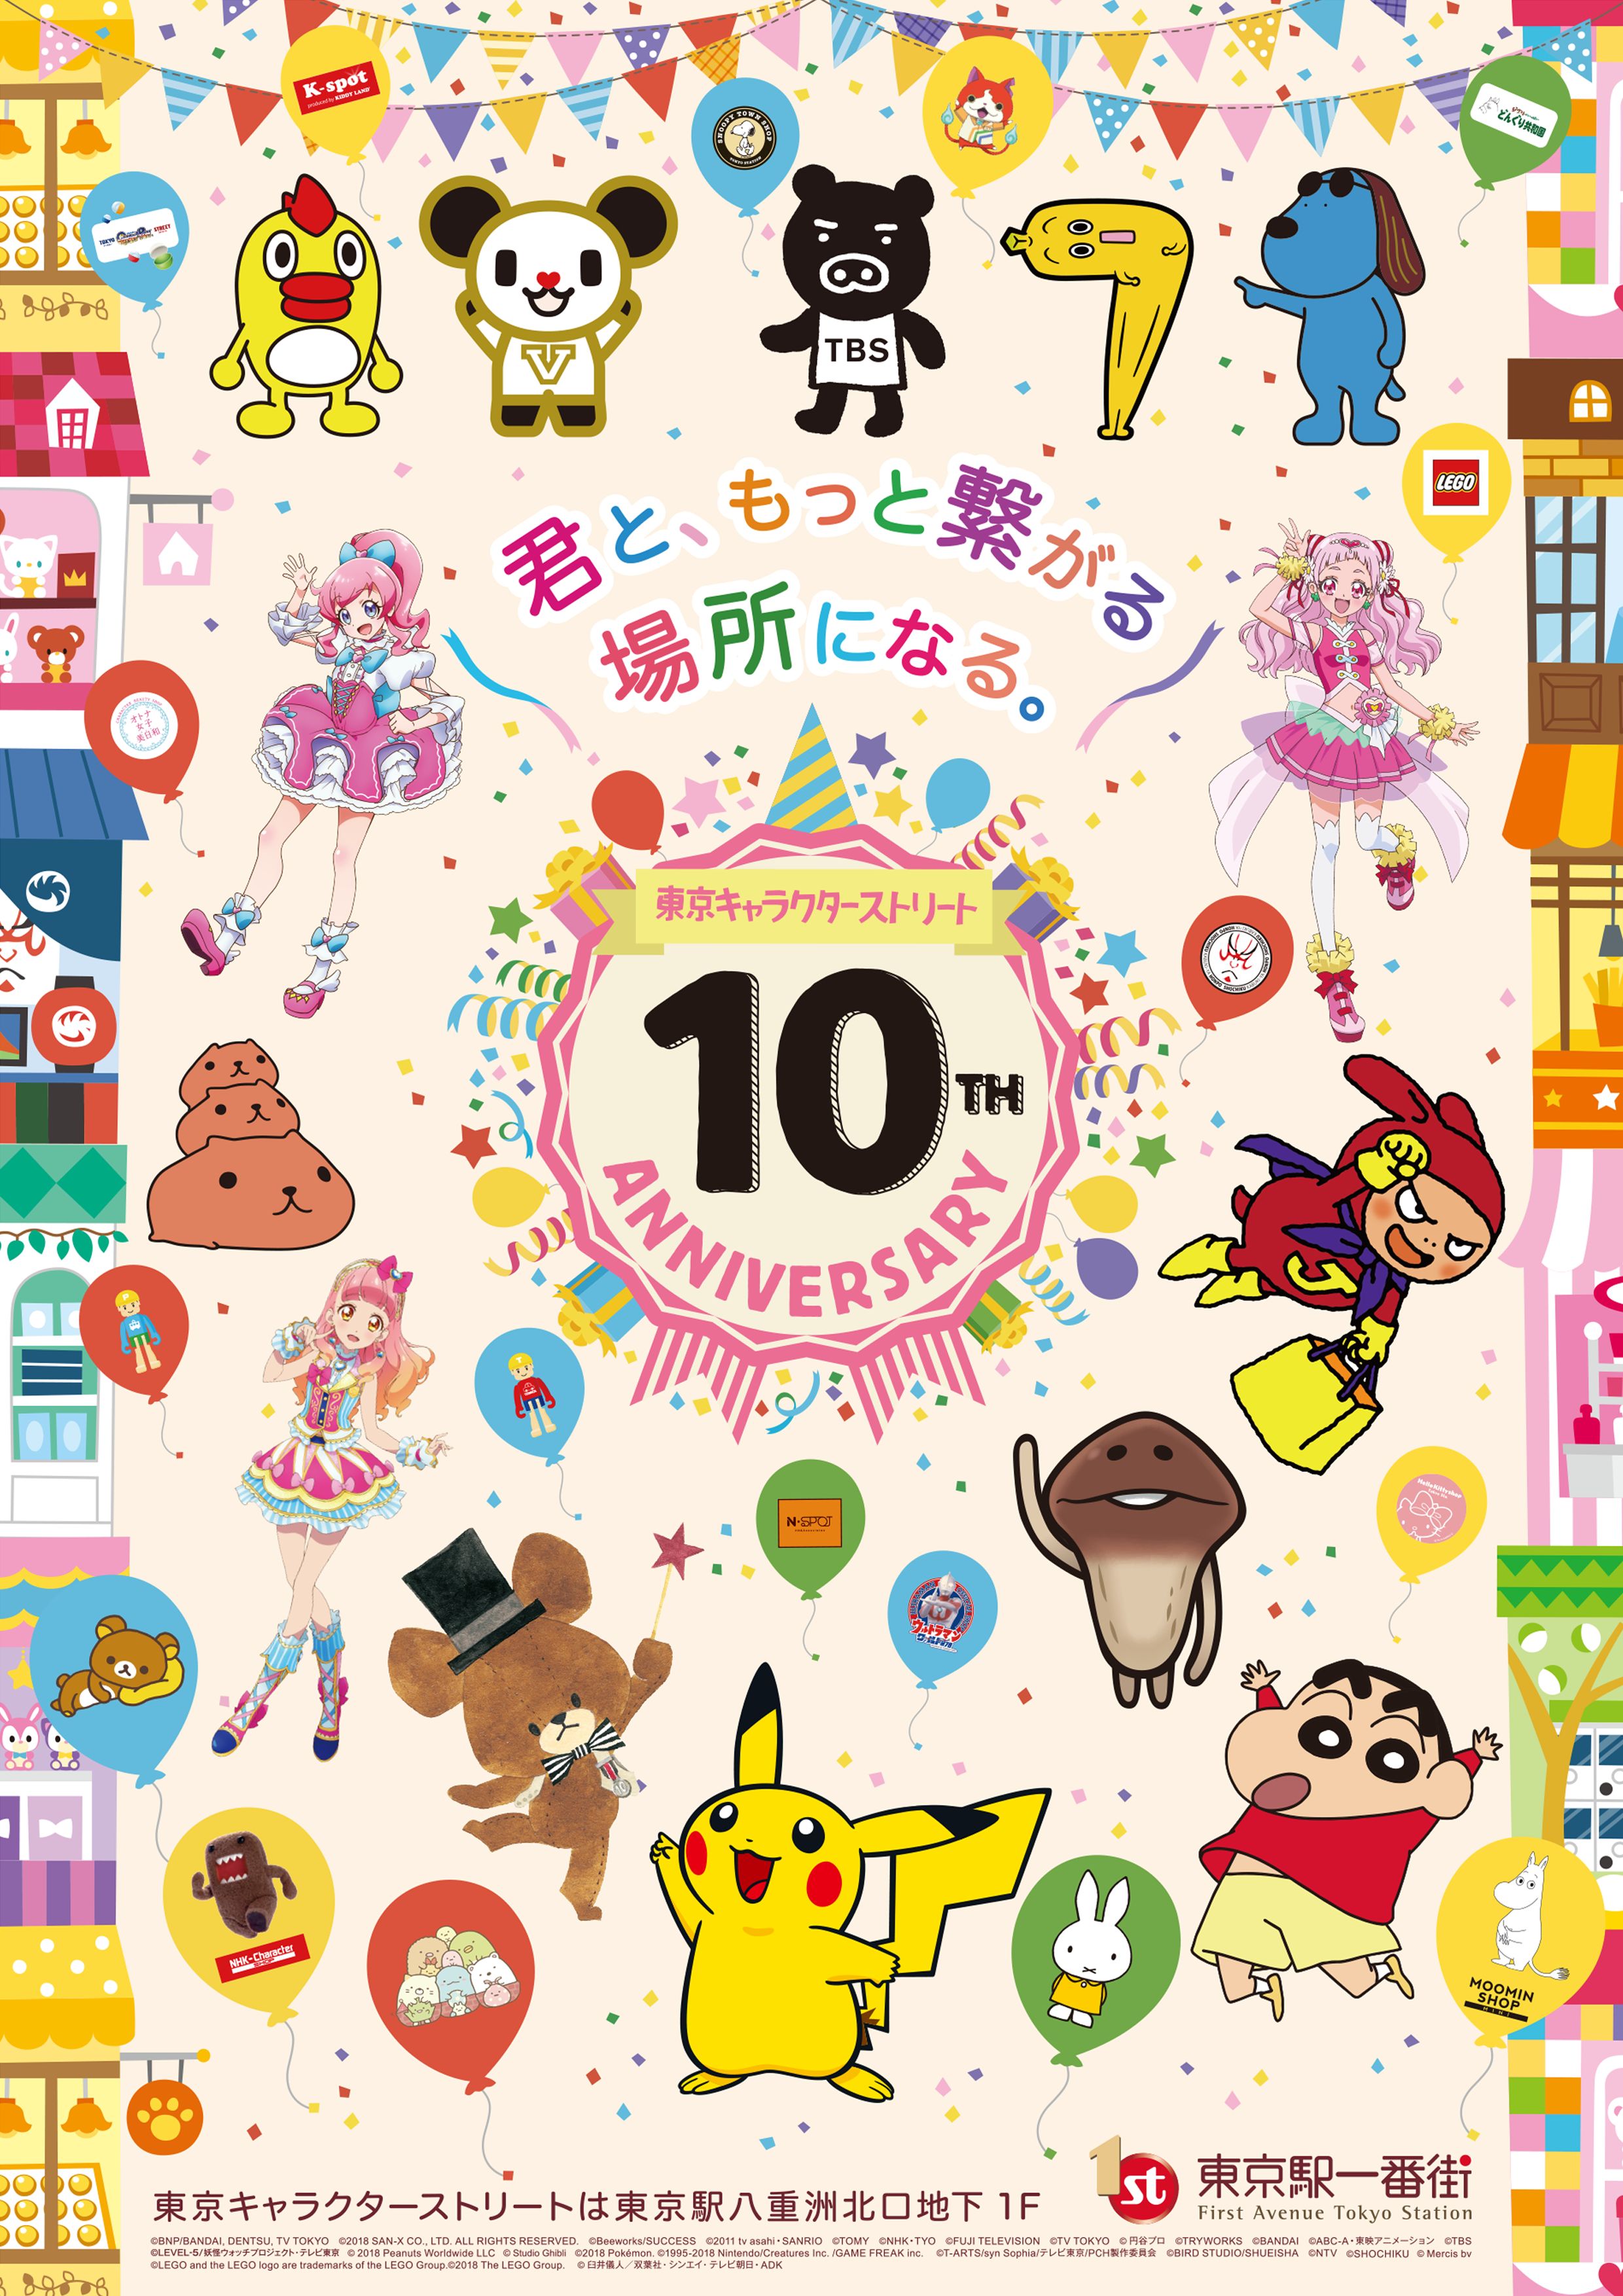 東京キャラクターストリート10周年記念 多数のキャラクターが出演する記念動画の放映や豪華キャラクターによるグリーティングを実施 東京 ステーション開発株式会社のプレスリリース